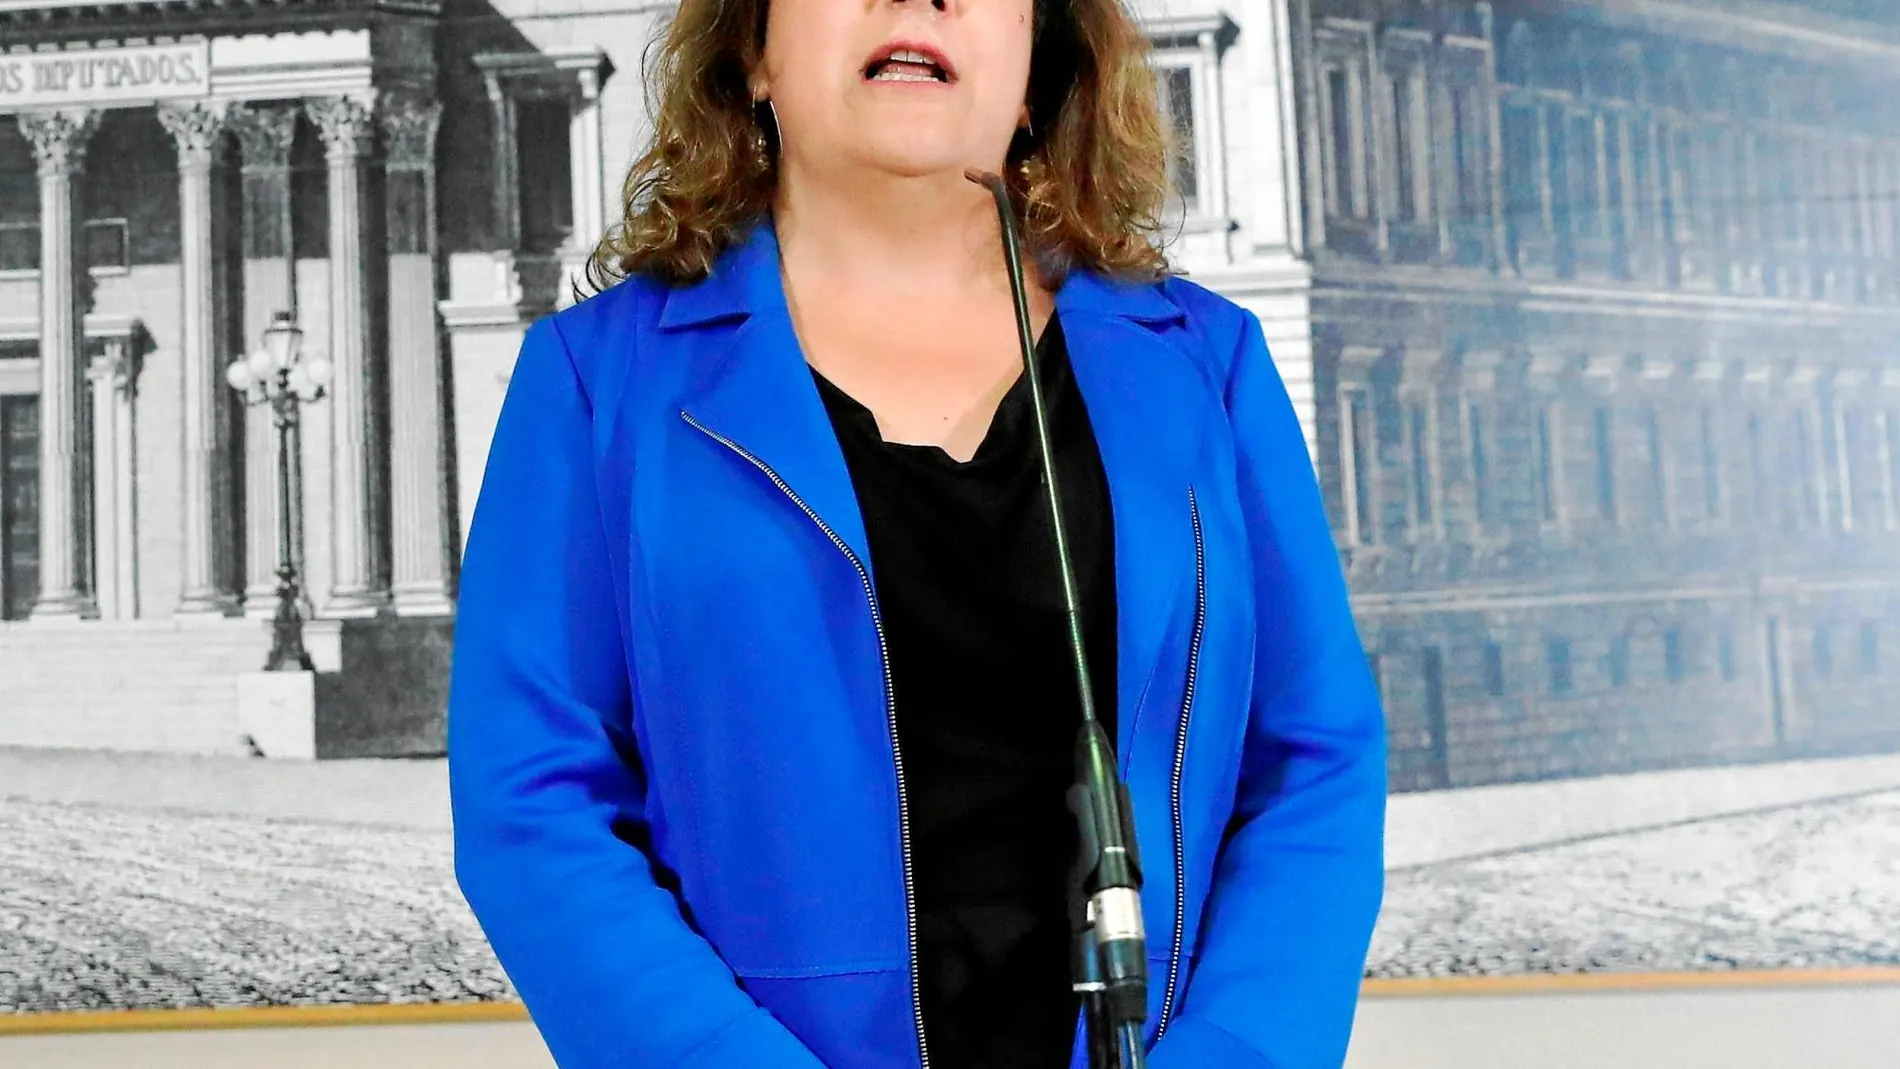 Iratxe Garcia, eurodiputada desde 2004, es una dirigente muy cercana a Pedro Sánchez y forma parte de la Ejecutiva del PSOE / Efe